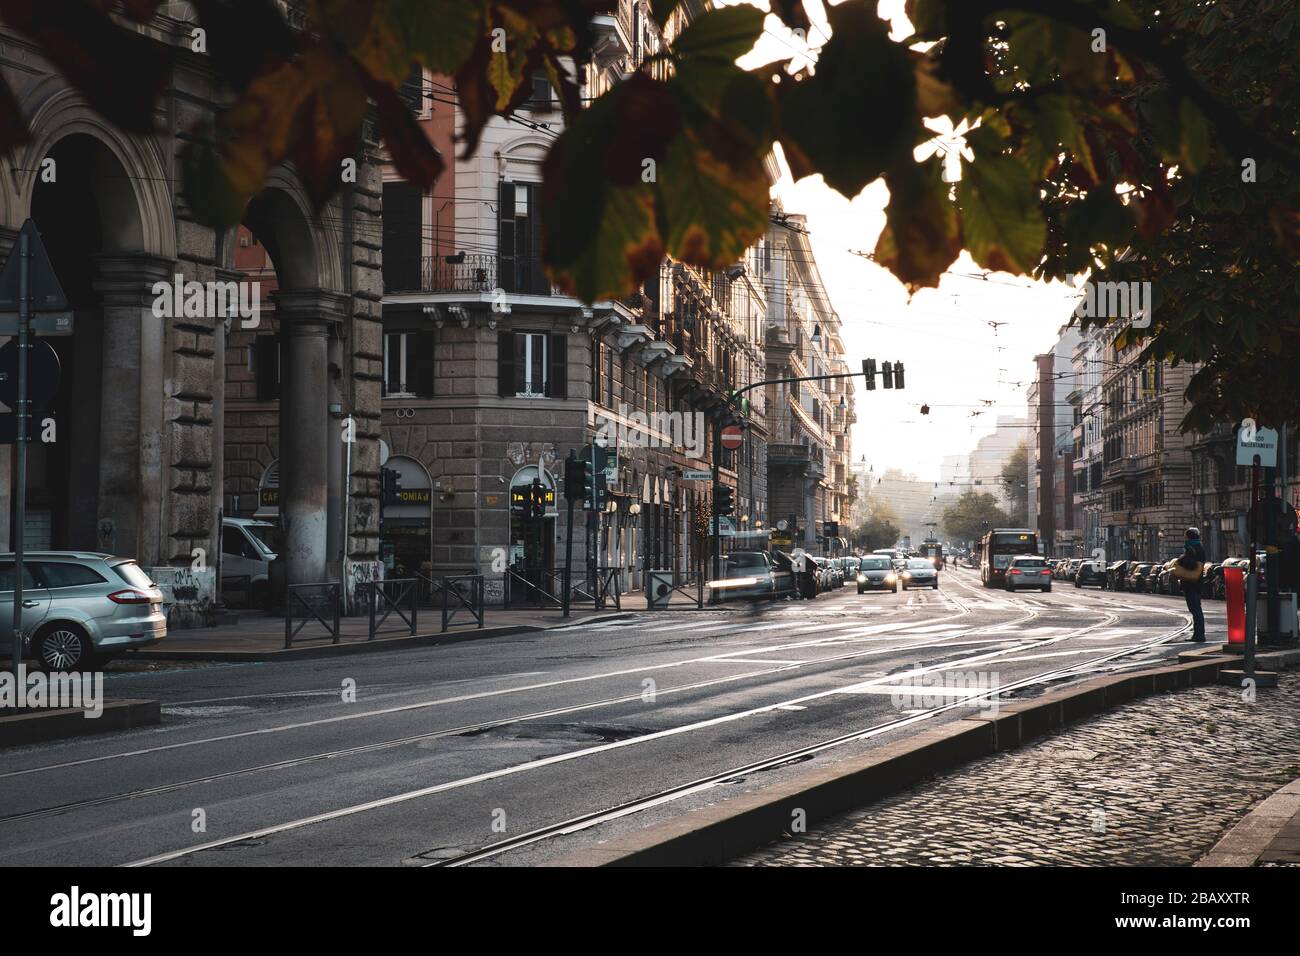 Roma, Italia, 27/11/2019: Strada urbana del centro di roma nelle prime ore del mattino, reportage di viaggio Foto Stock